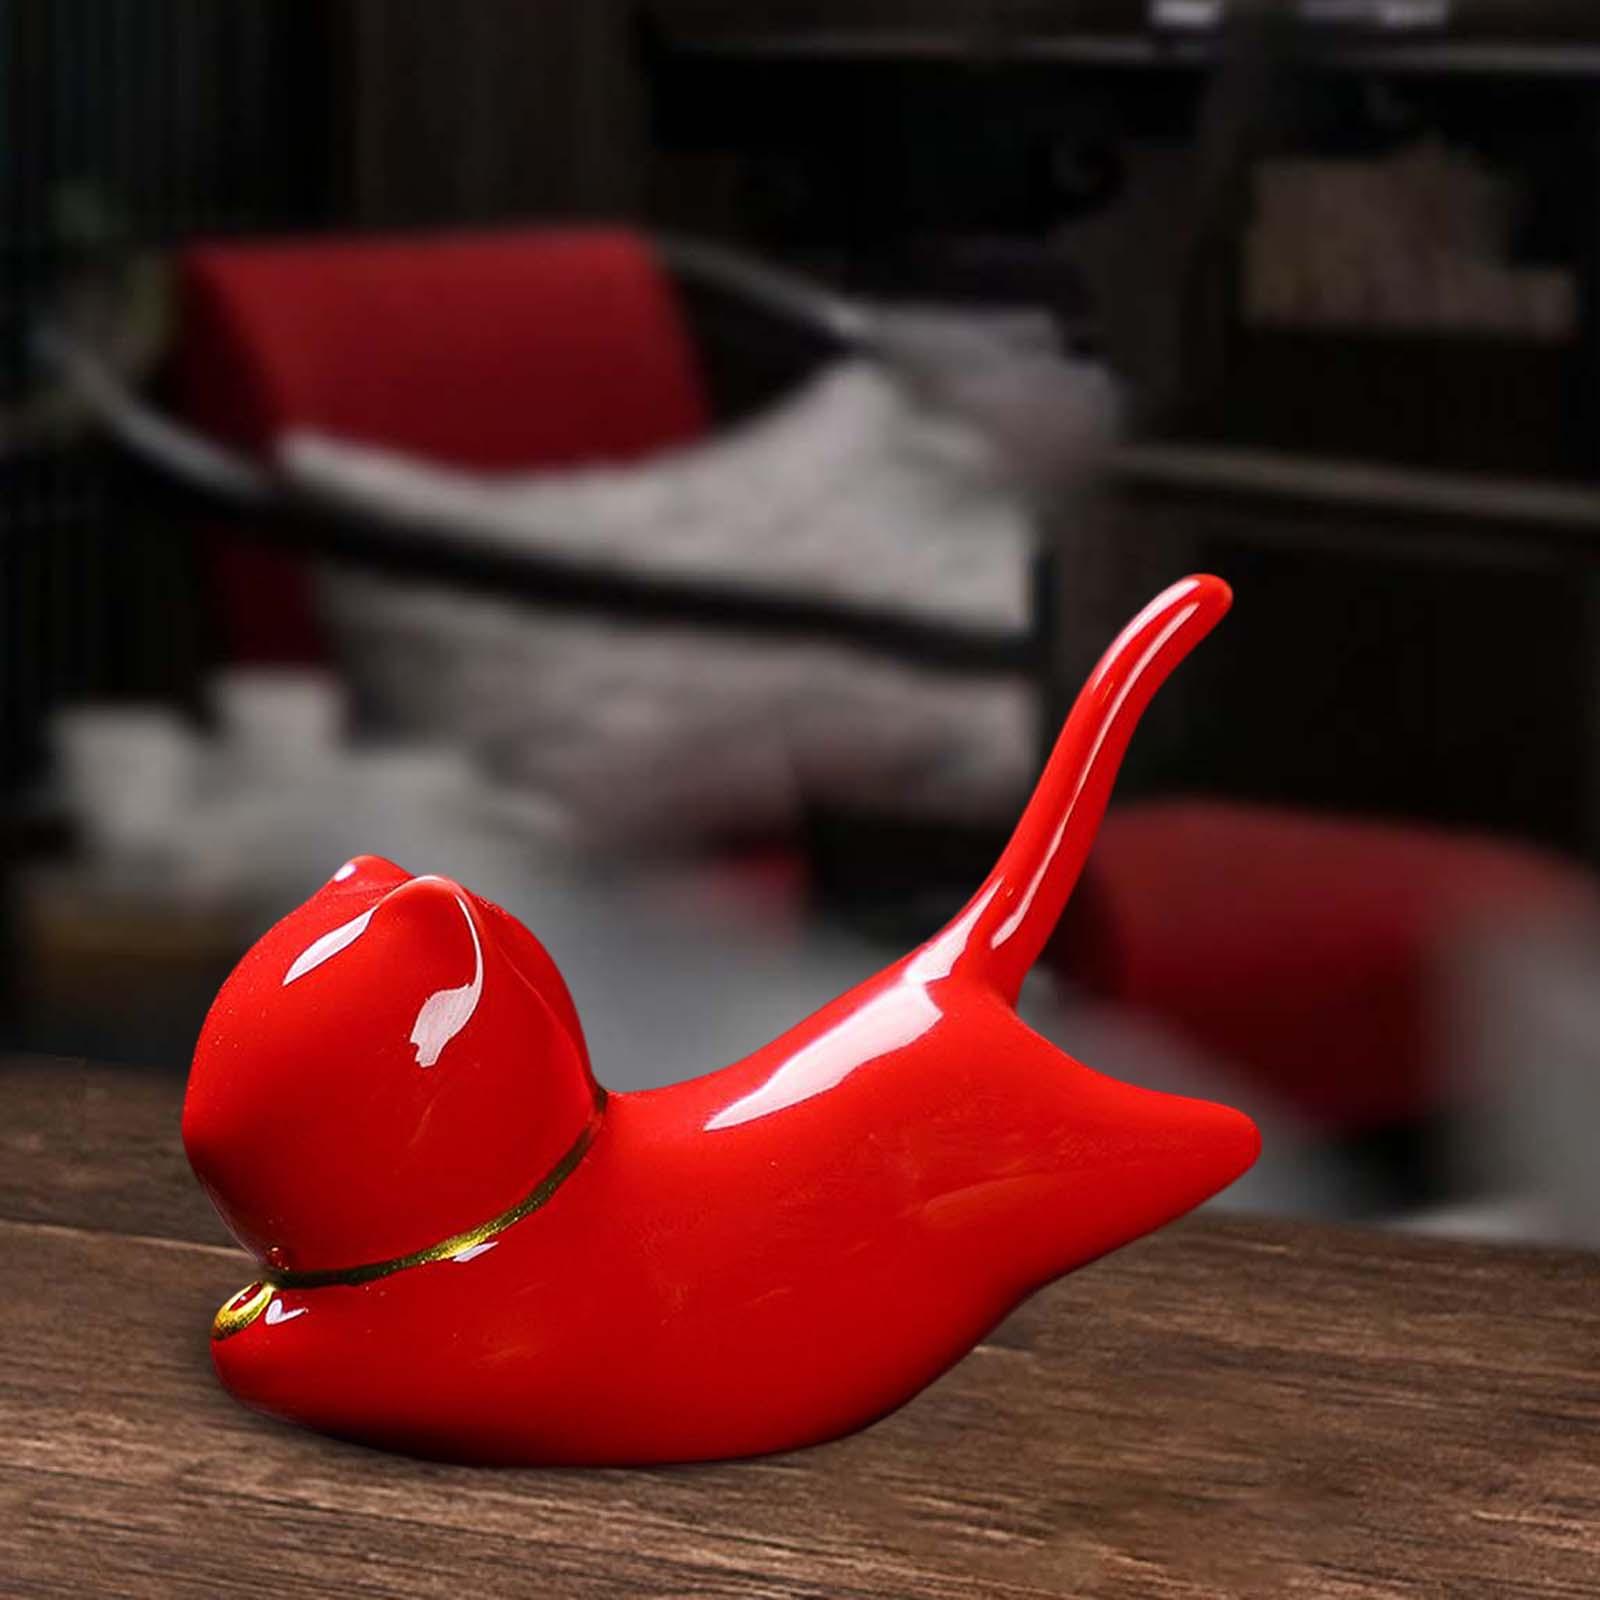 Stick Incense Burner Modern Ceramic Ornament for Desktop Cabinet Office Red Cat